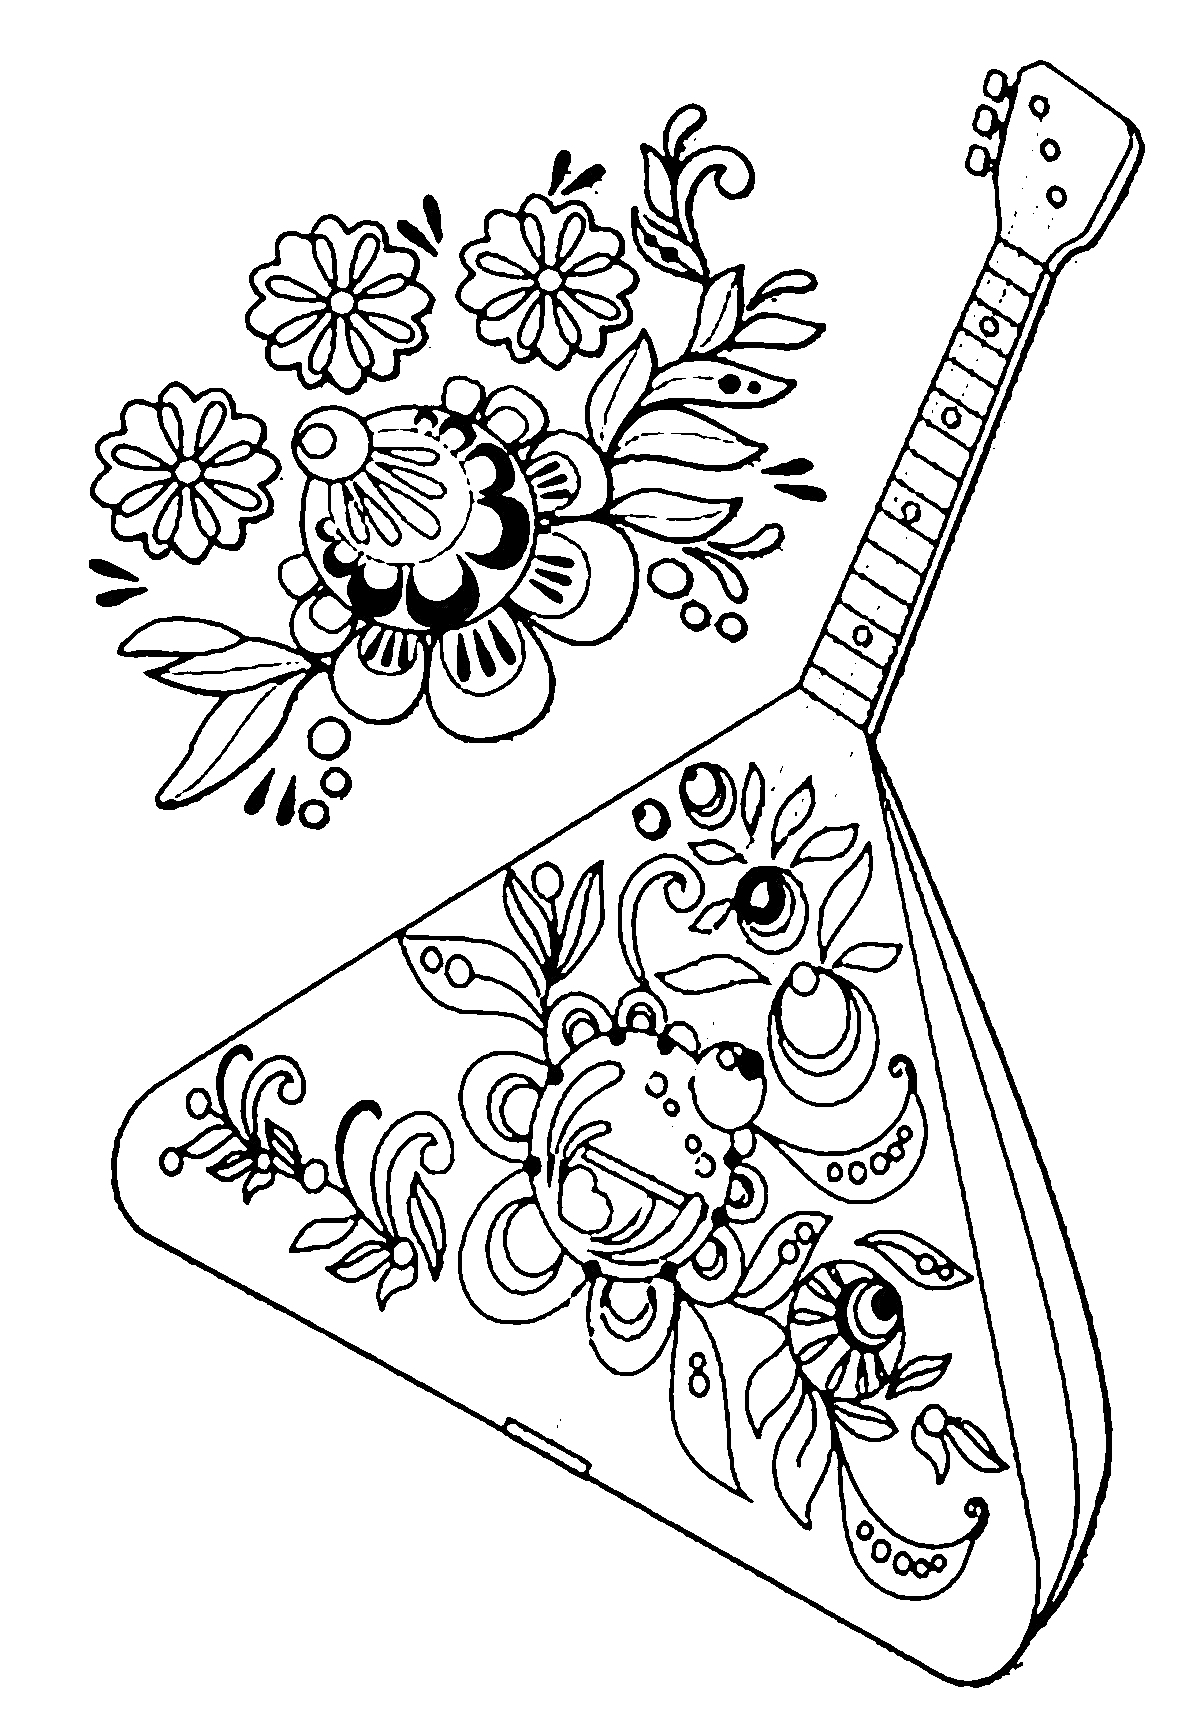 Раскраска Балалайка с цветочным узором и отдельным элементом цветов